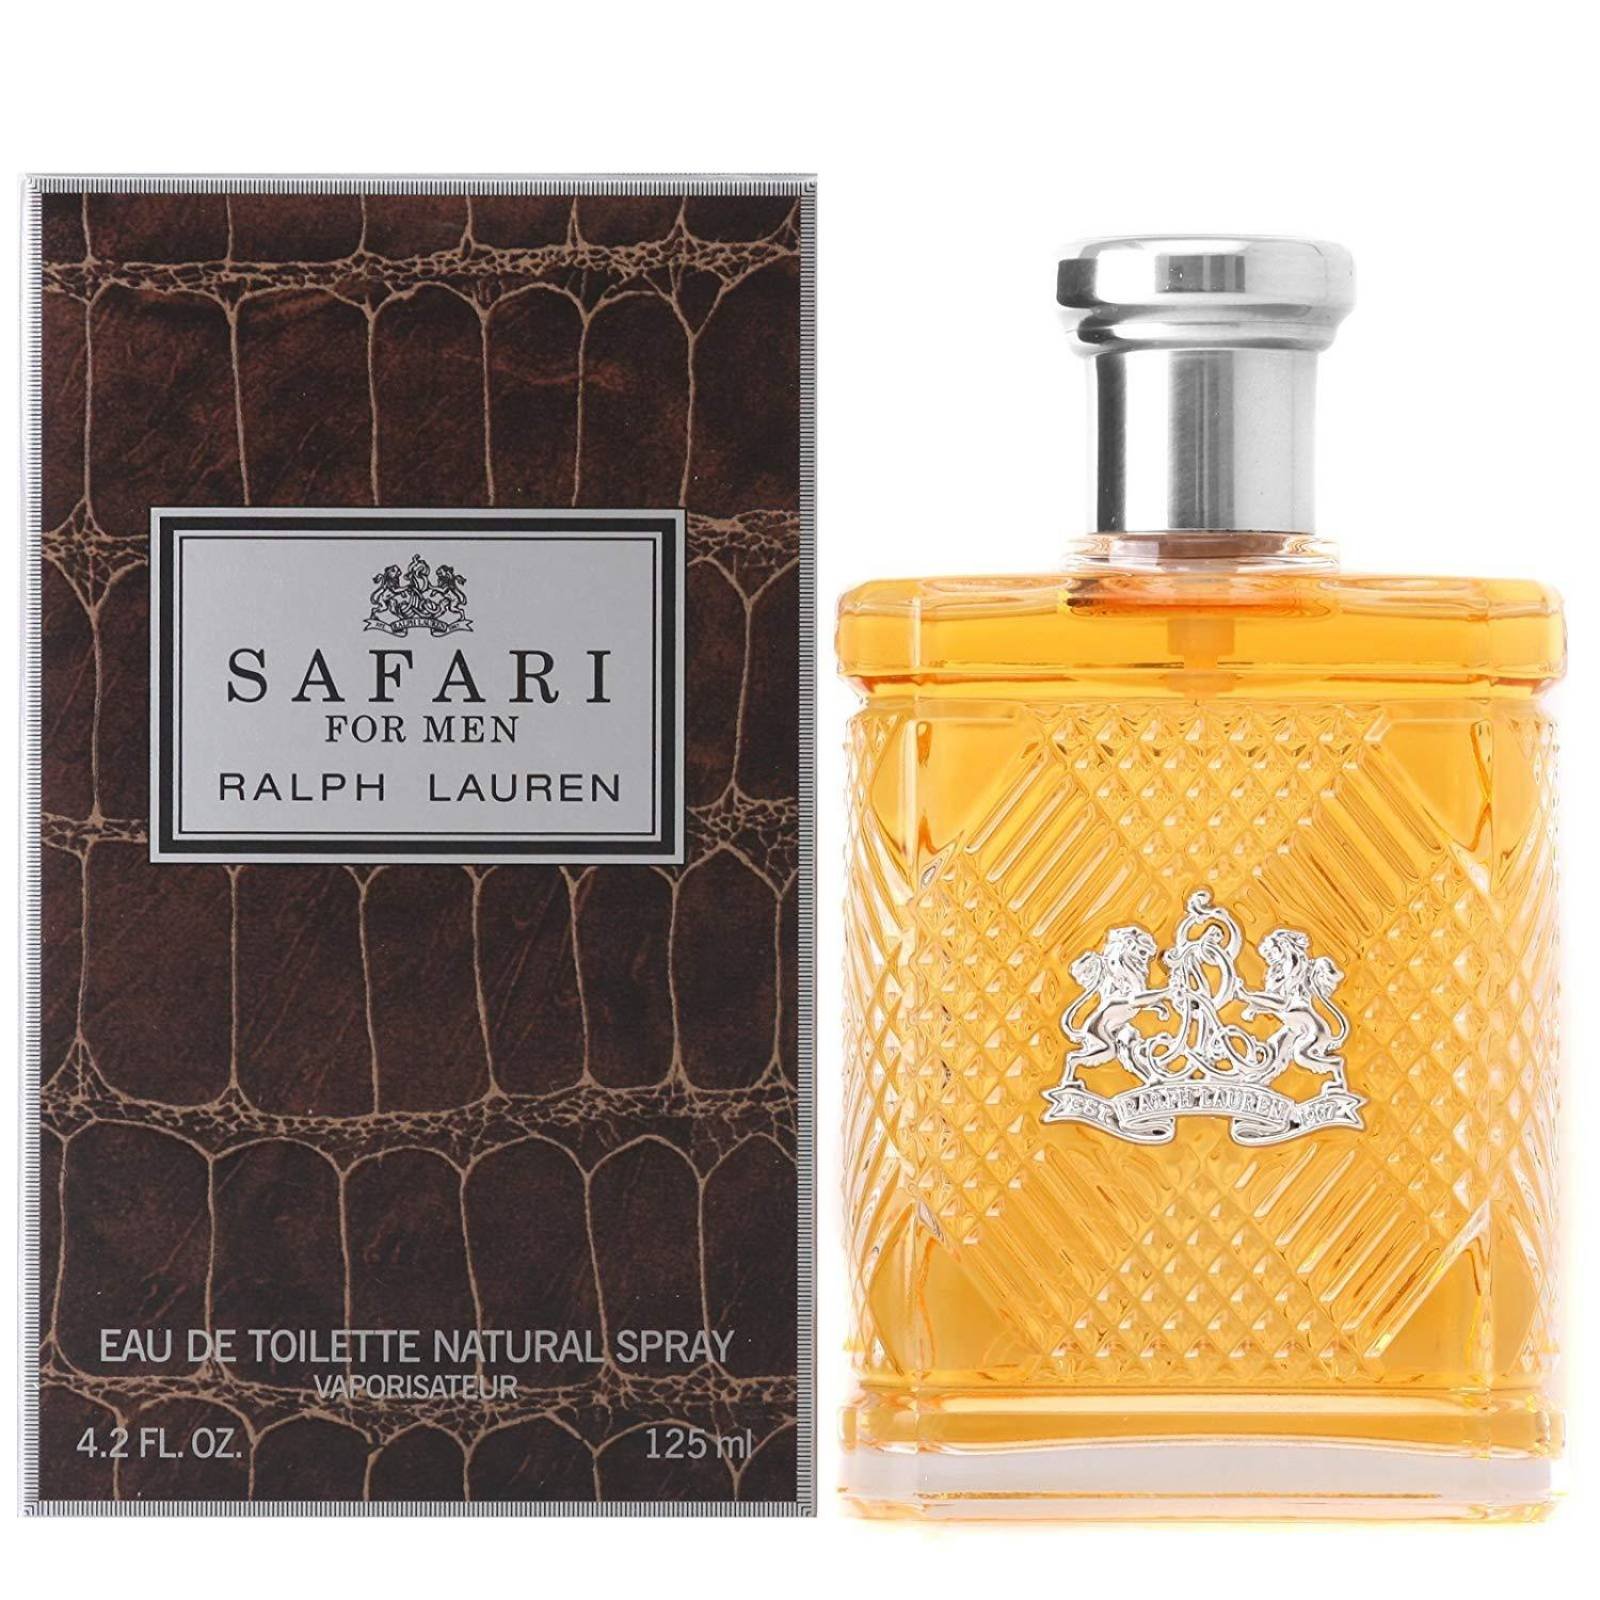 ralph lauren safari perfume dupe